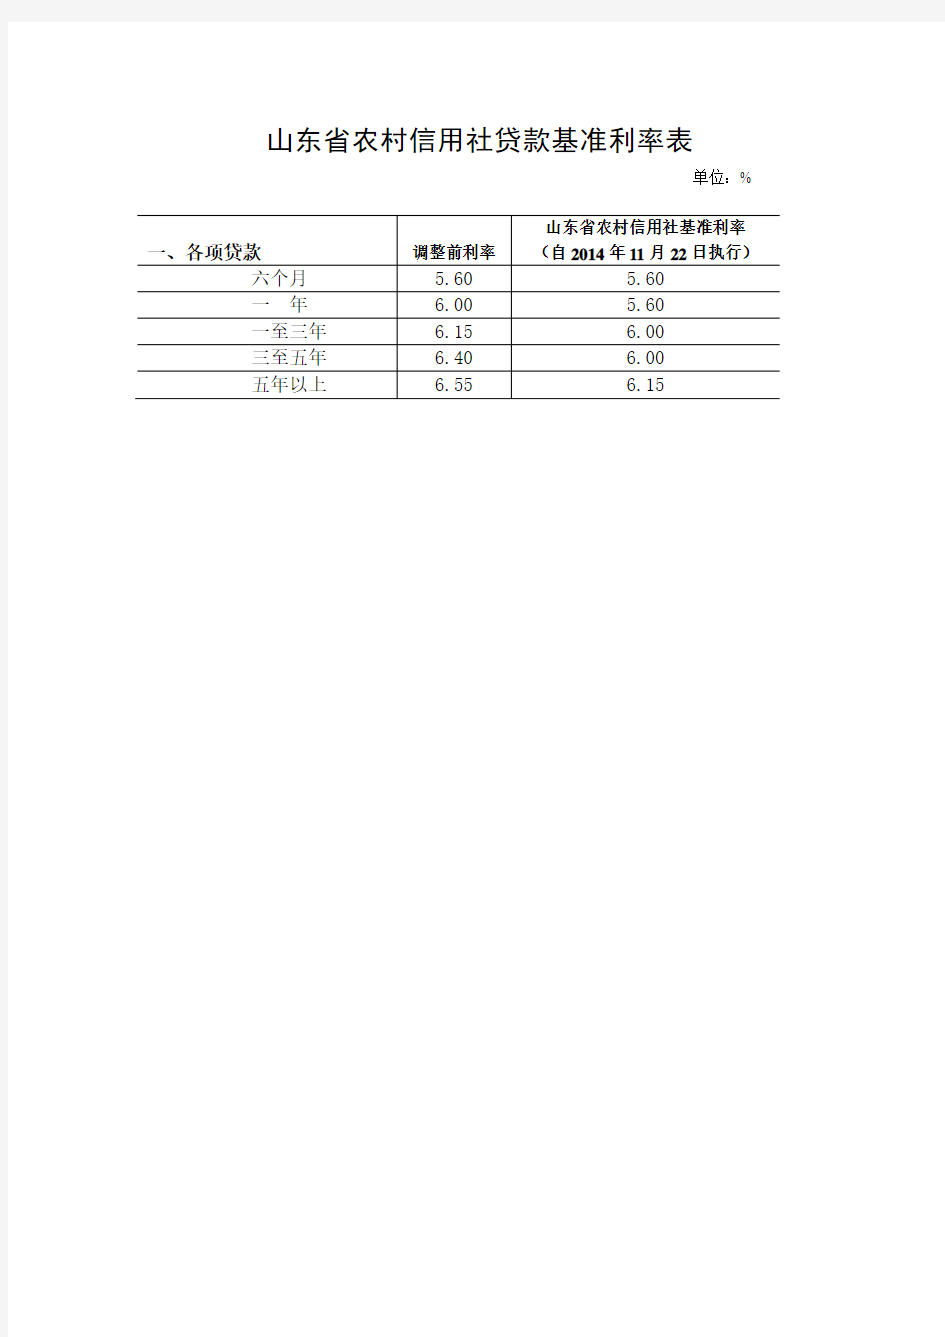 山东省农村信用社人民币存款利率表